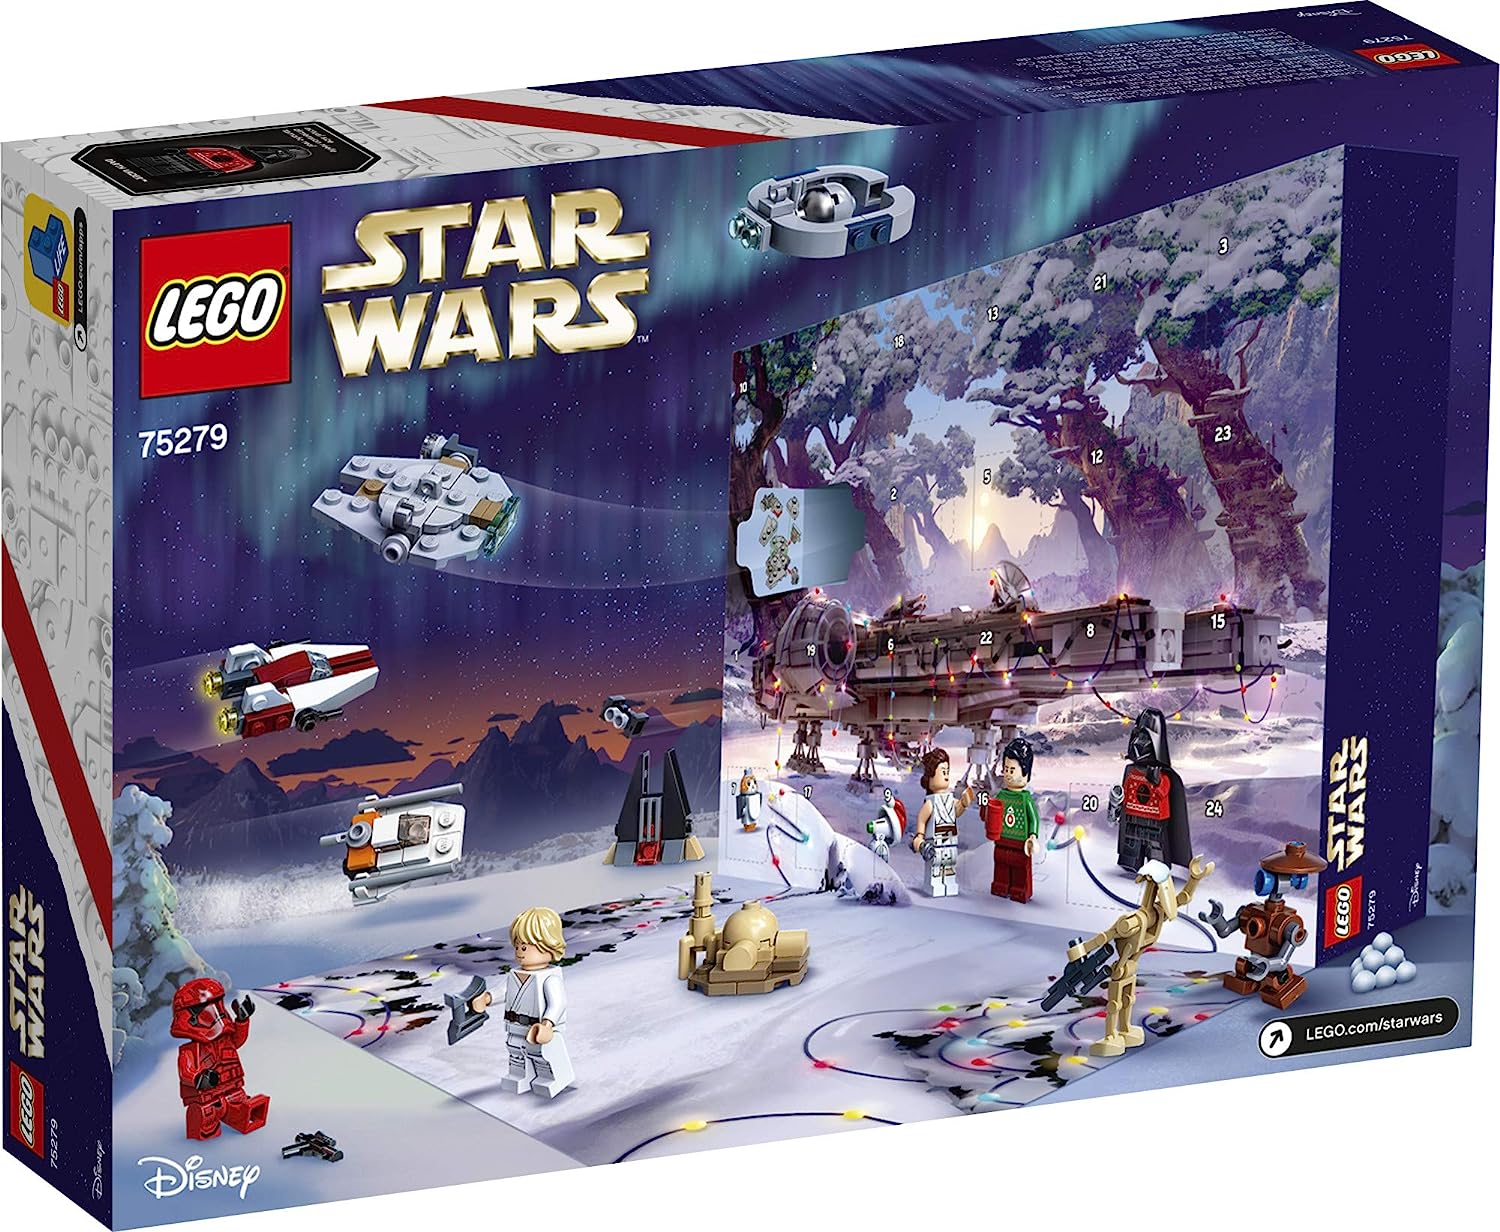 最高の レゴ スターウォーズ Lego Star Wars Advent Calendar Building Kit For Kids Fun Calendar With Star Wars Buildable Toys Plus Code To Unlock Character In Star Wars The Skywalker Saga Game